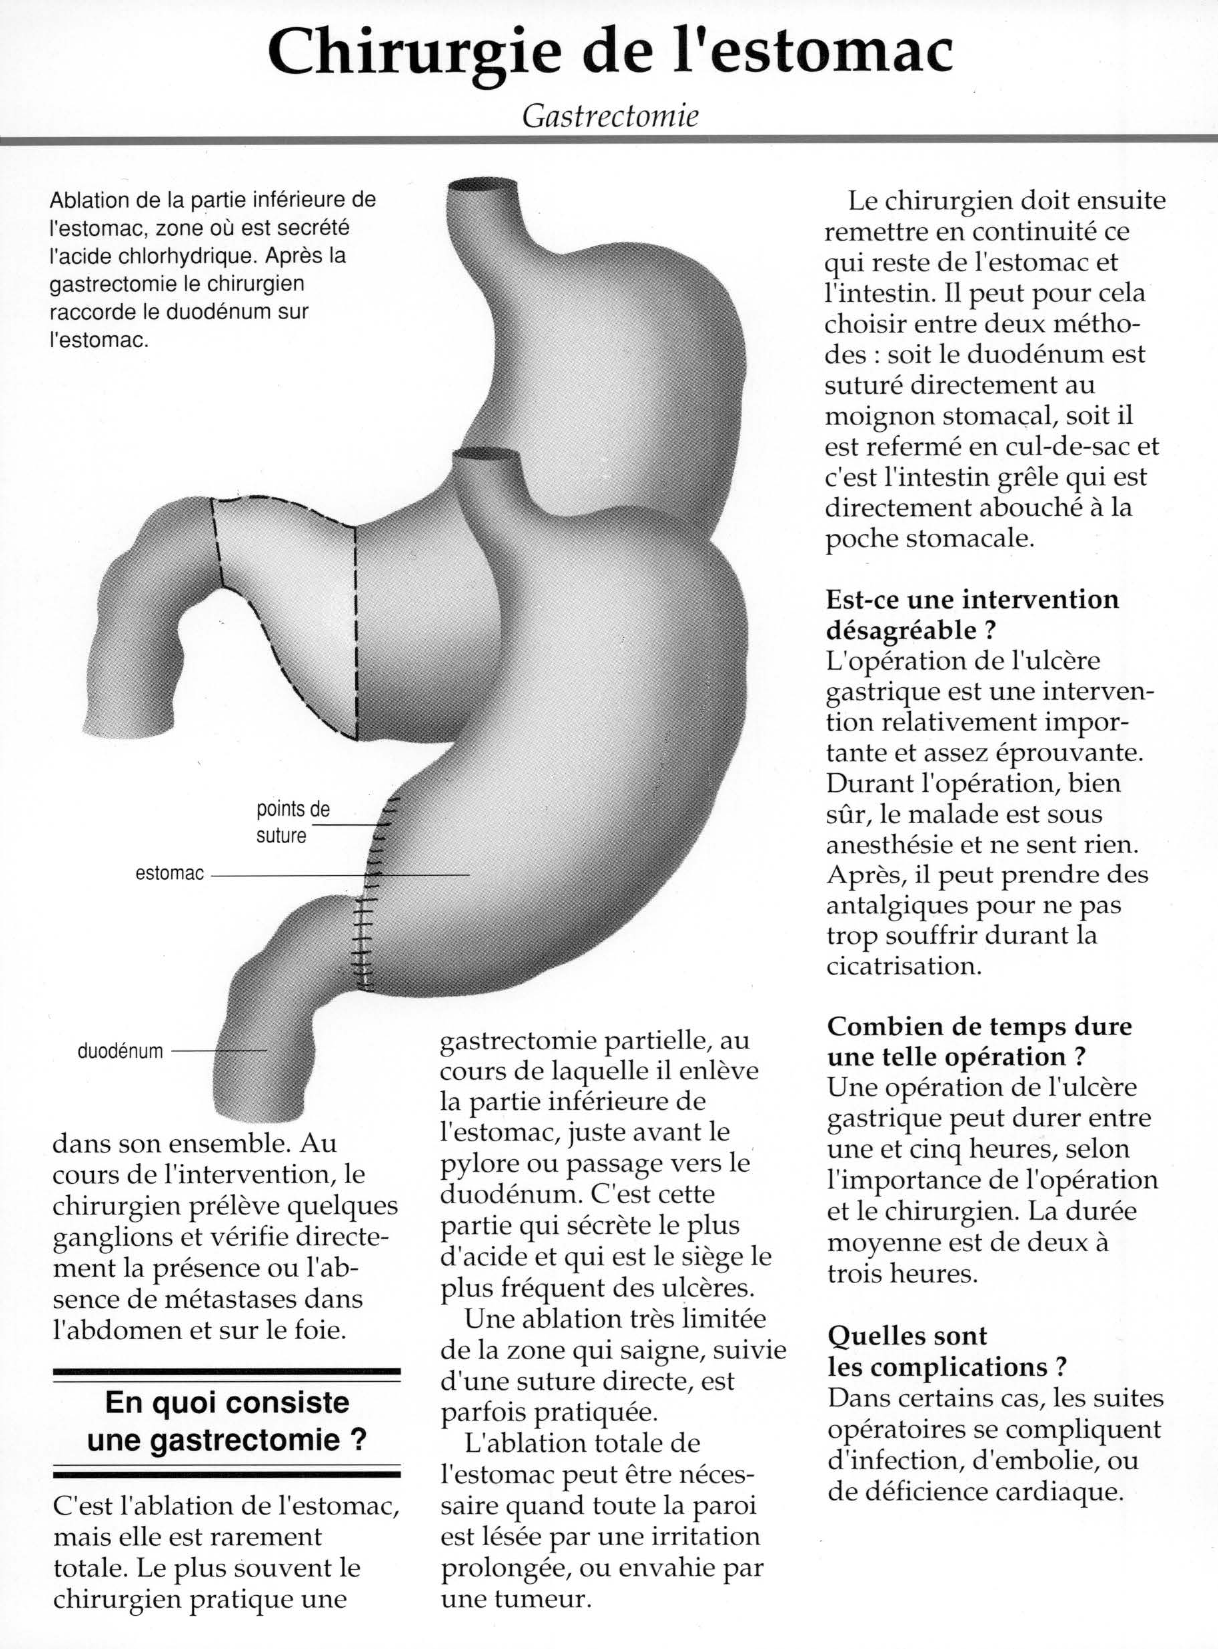 Prévisualisation du document Chirurgie de l'estomac:
Gastrectomie.